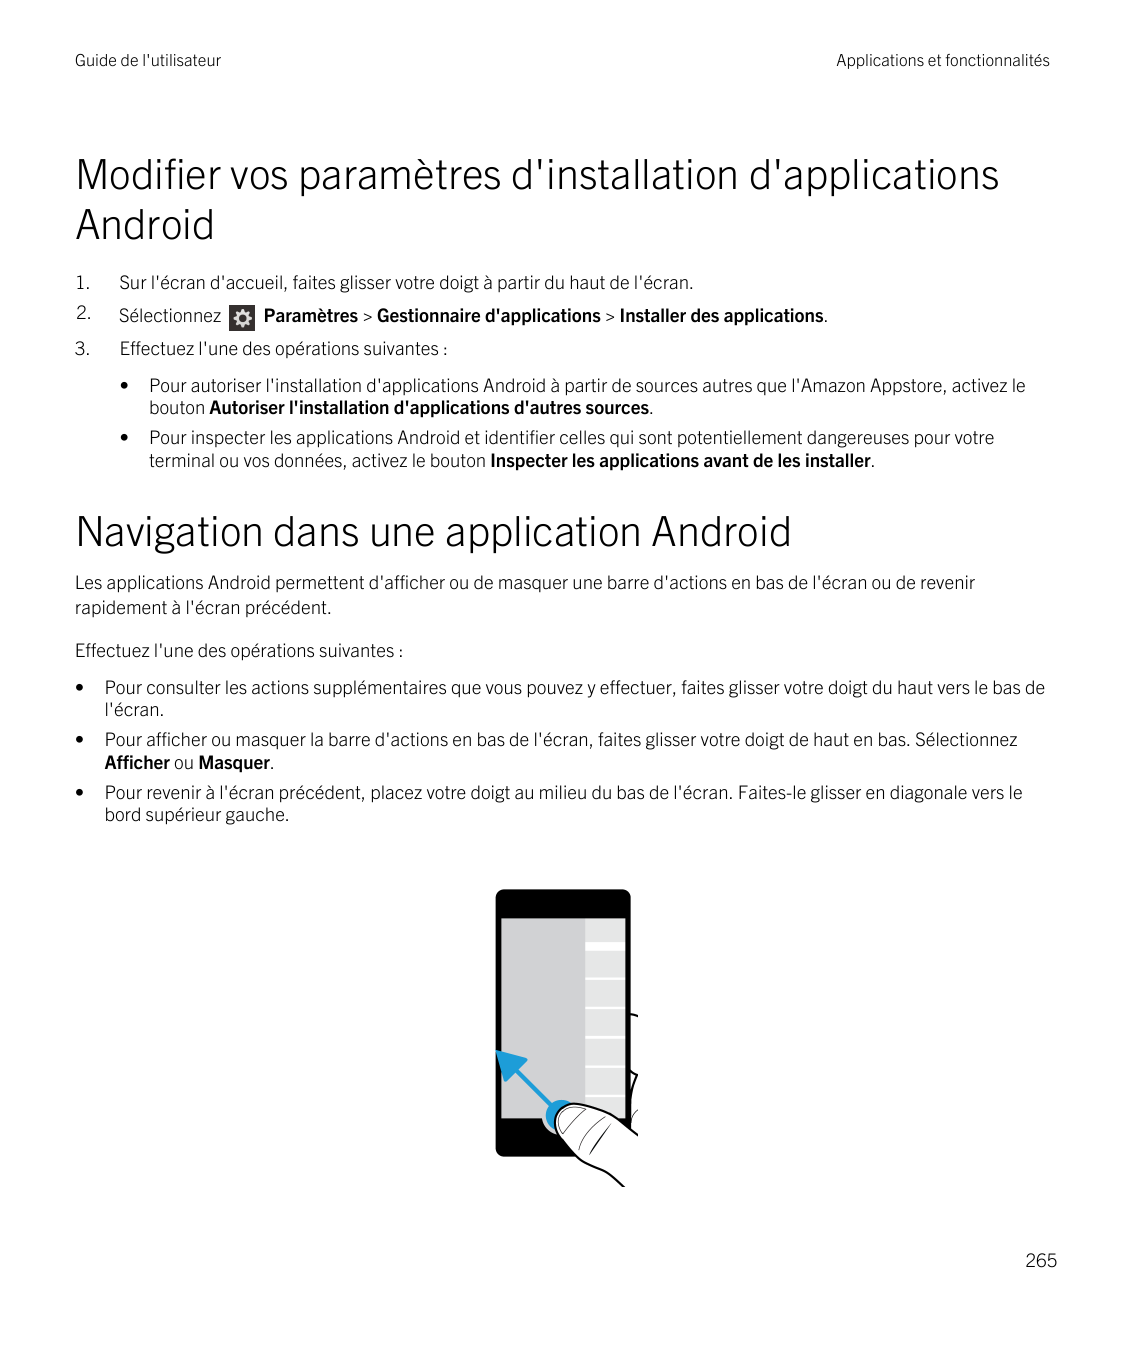 Guide de l'utilisateurApplications et fonctionnalitésModifier vos paramètres d'installation d'applicationsAndroid1.Sur l'écran d